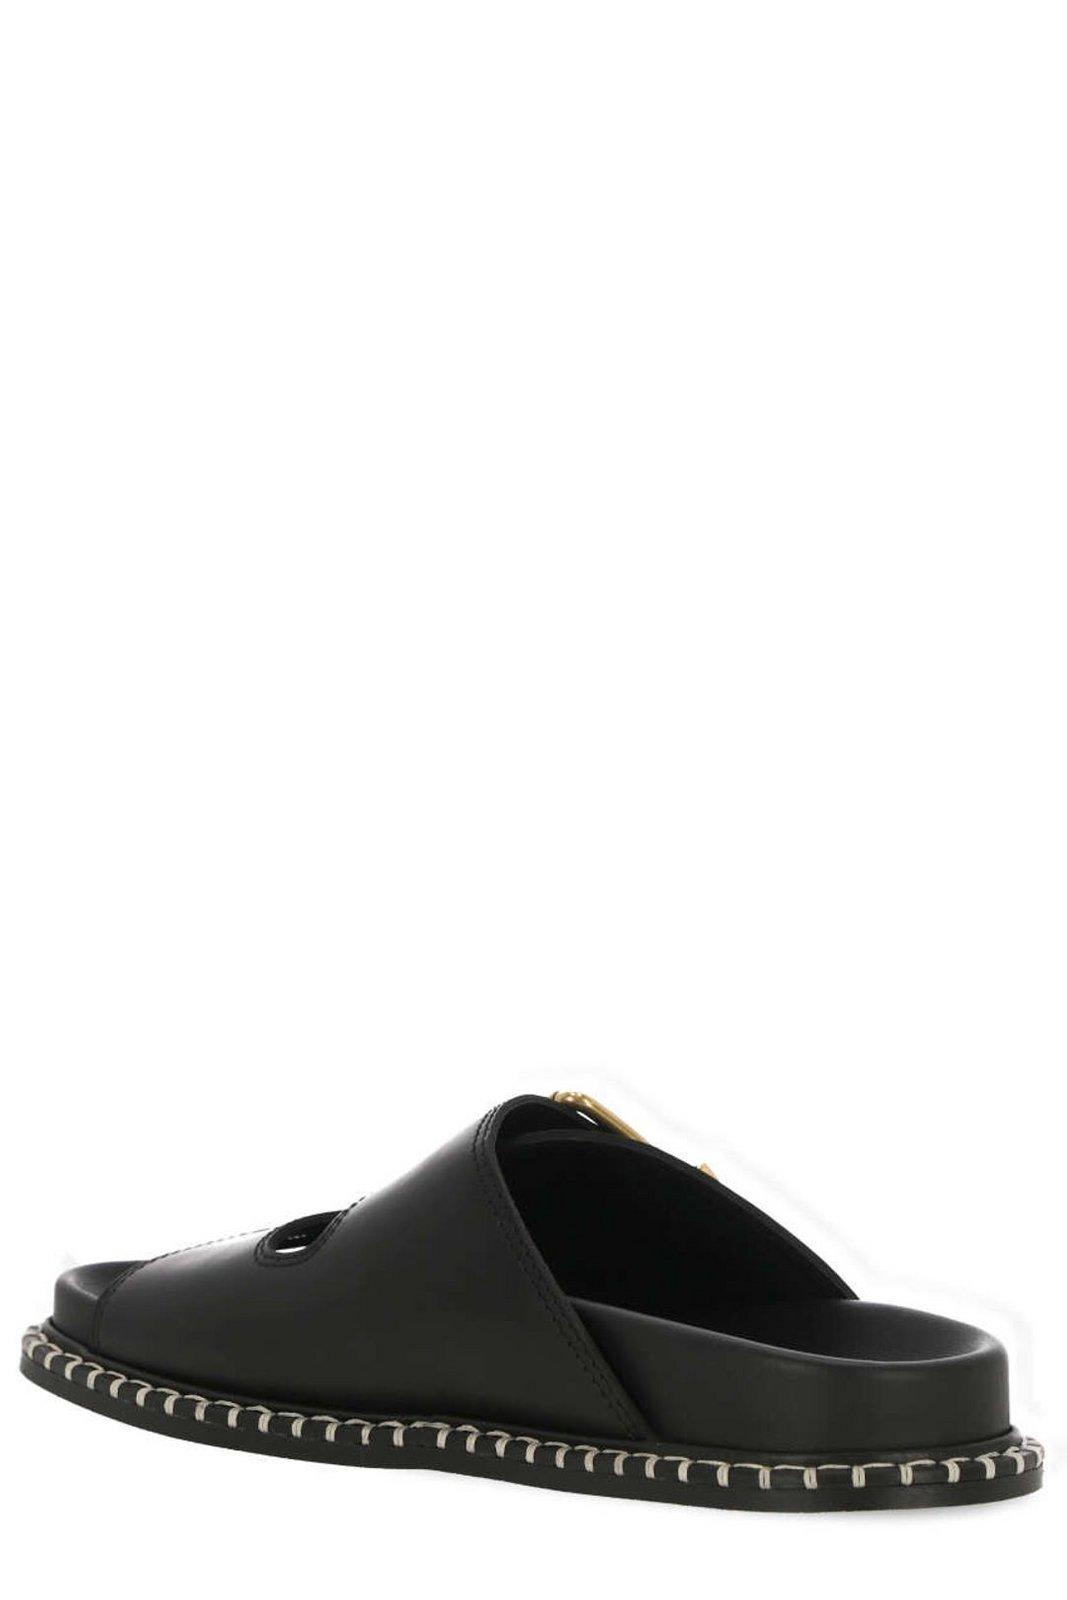 Shop Chloé Logo Engraved Buckled Sandals In Black